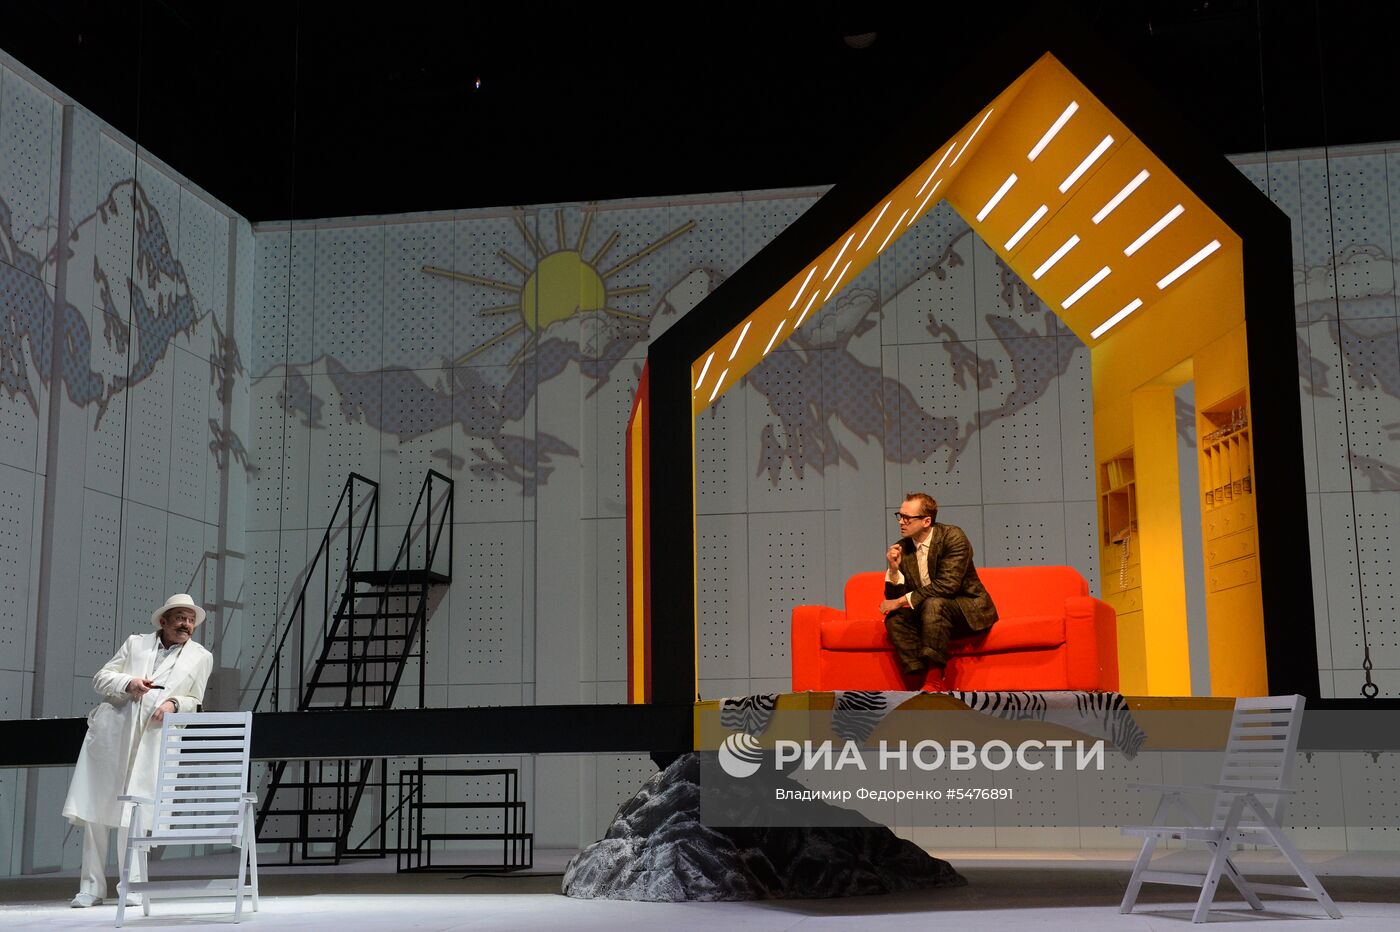 Показ спектакля «Ловушка для наследника» в театре О. Табакова